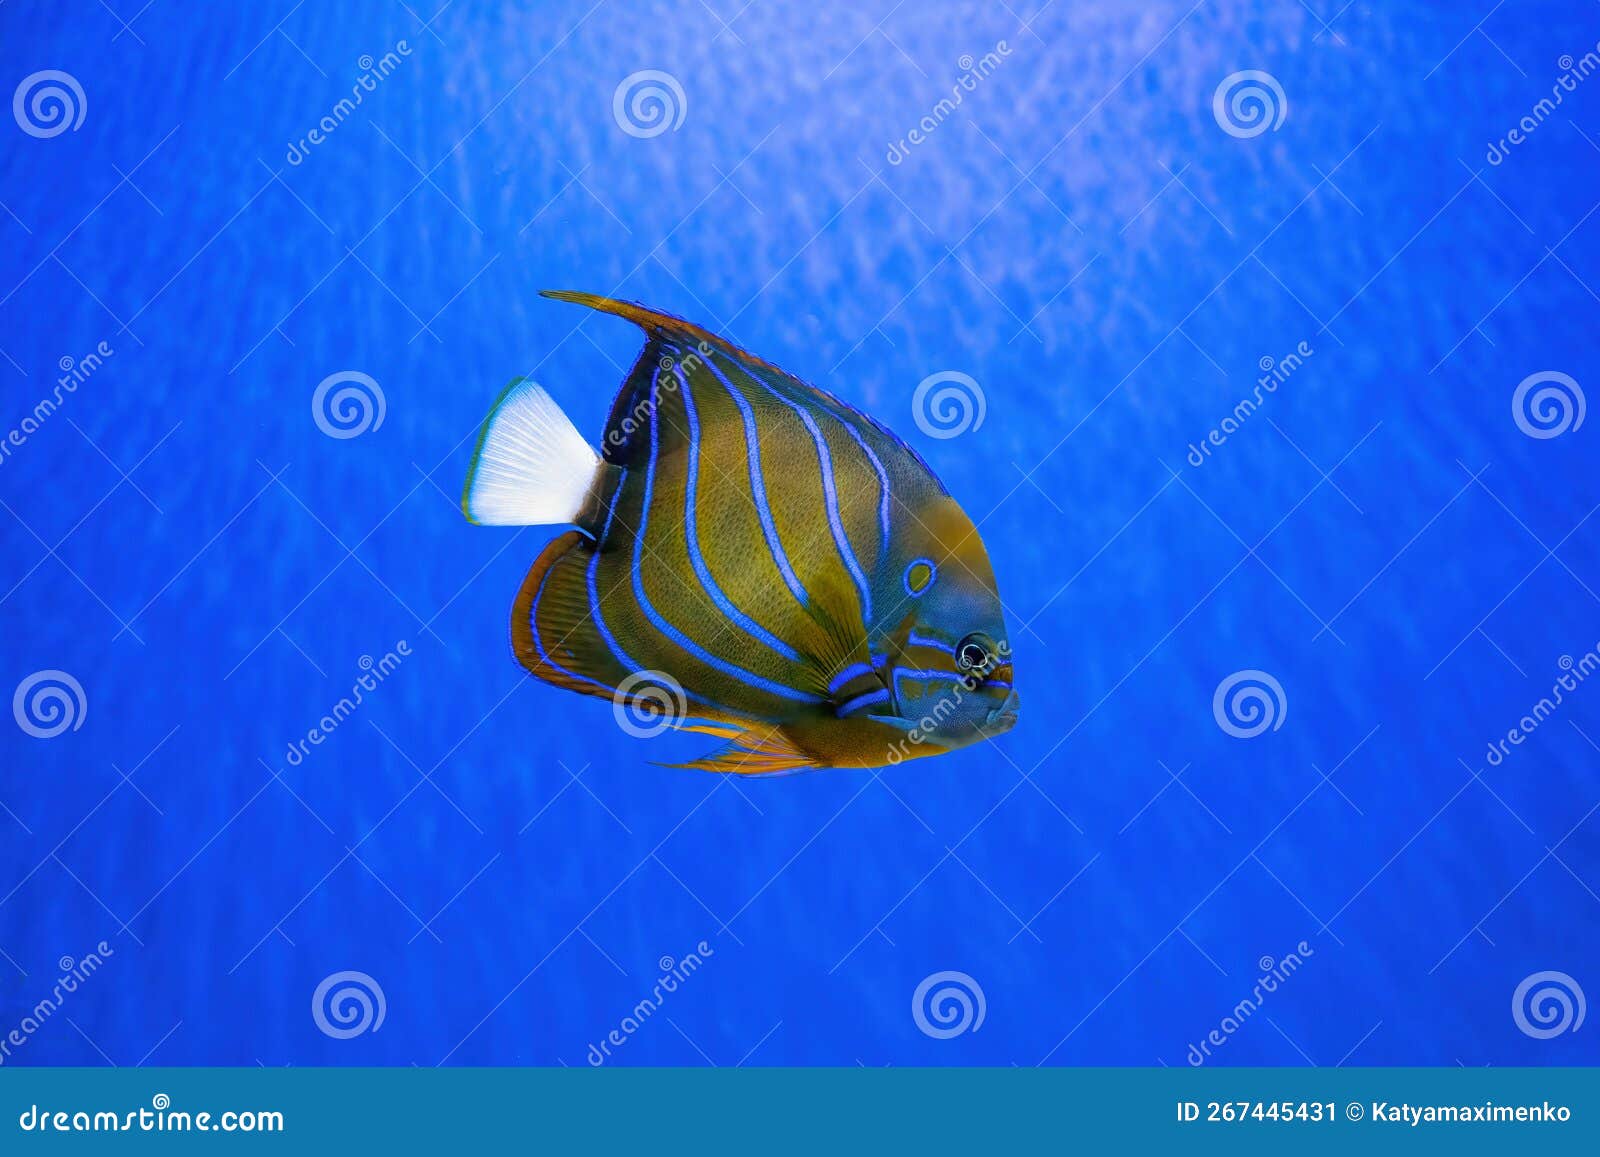 Tag: blue ring angelfish | Reef Builders | The Reef and Saltwater Aquarium  Blog